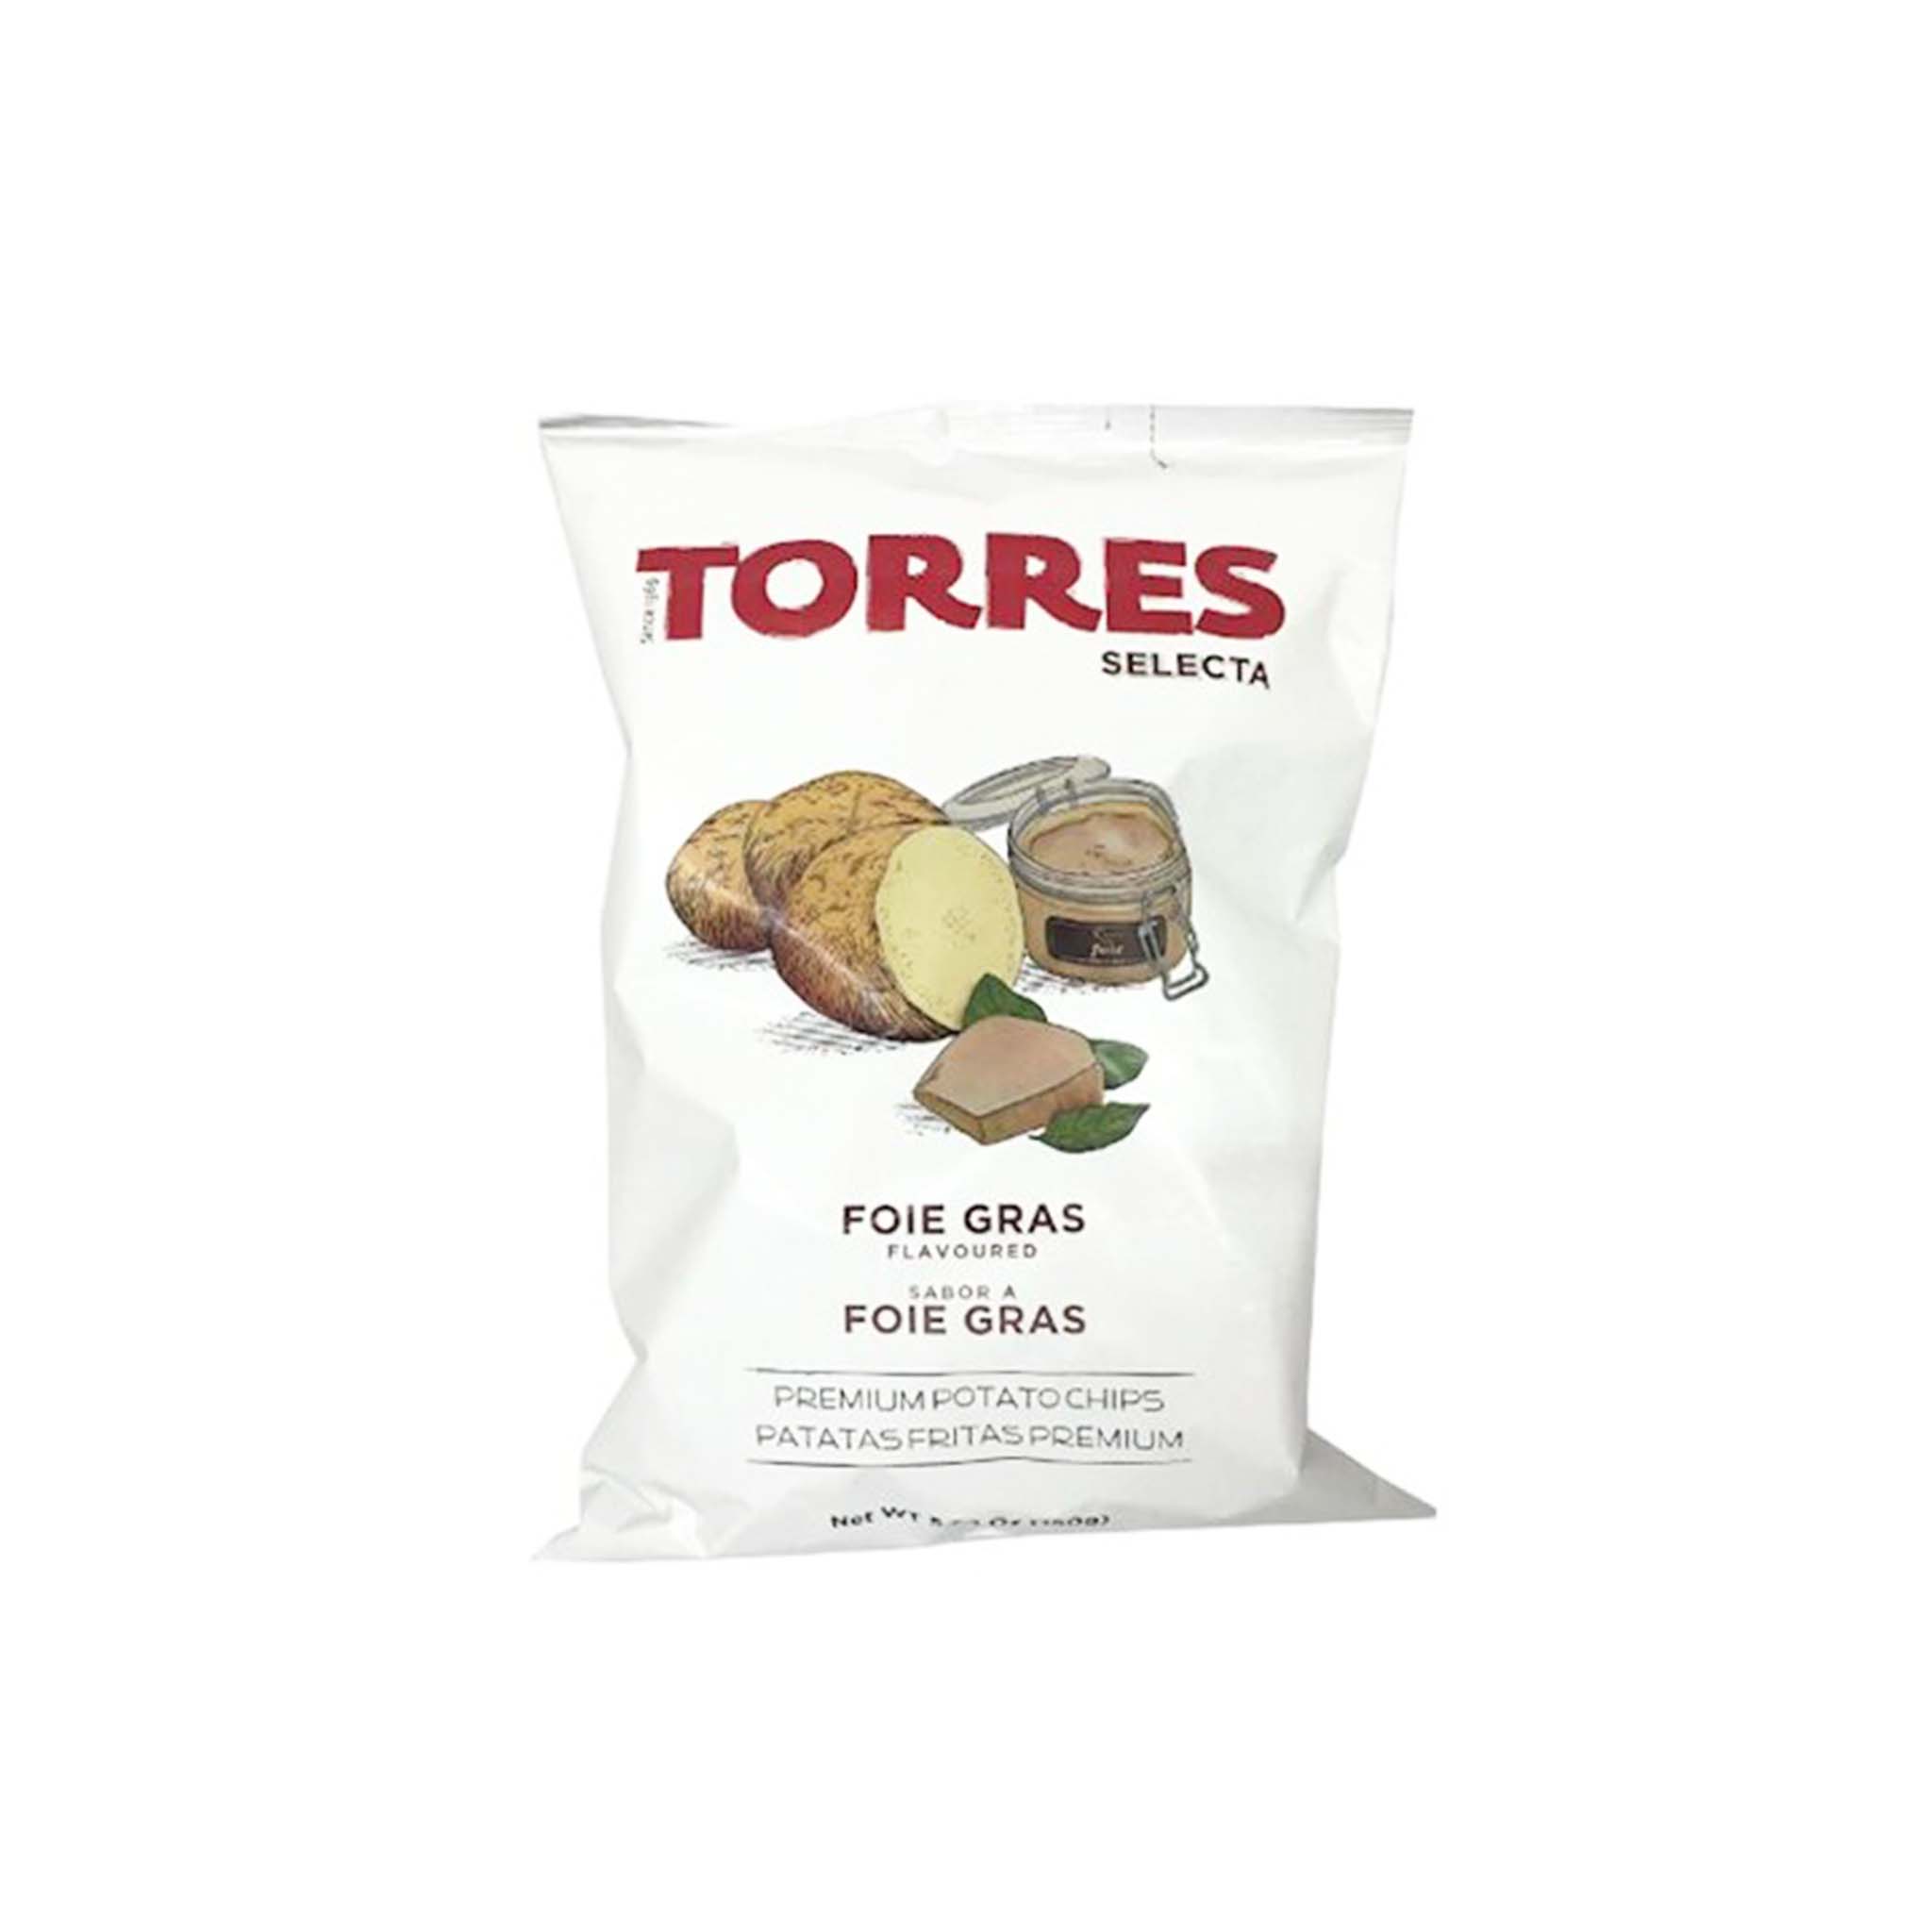 TORRES FOIE GRAS CHIPS 50g